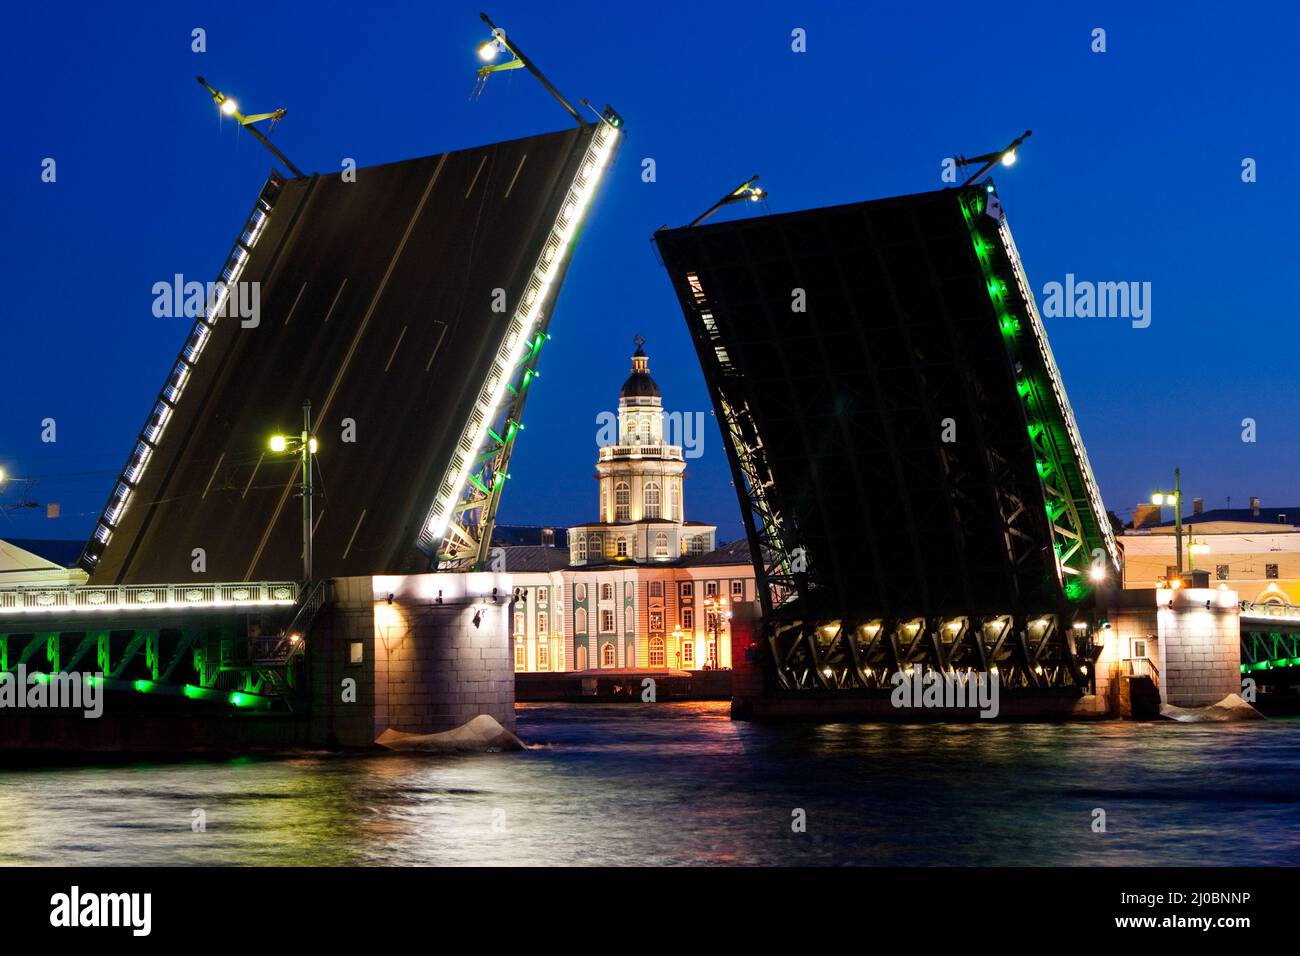 Geschiedene Palastbrücke während der Weißen Nächte wieg auf Kuntskamera , St. Petersburg, Russland. Juli 2010 Stockfoto